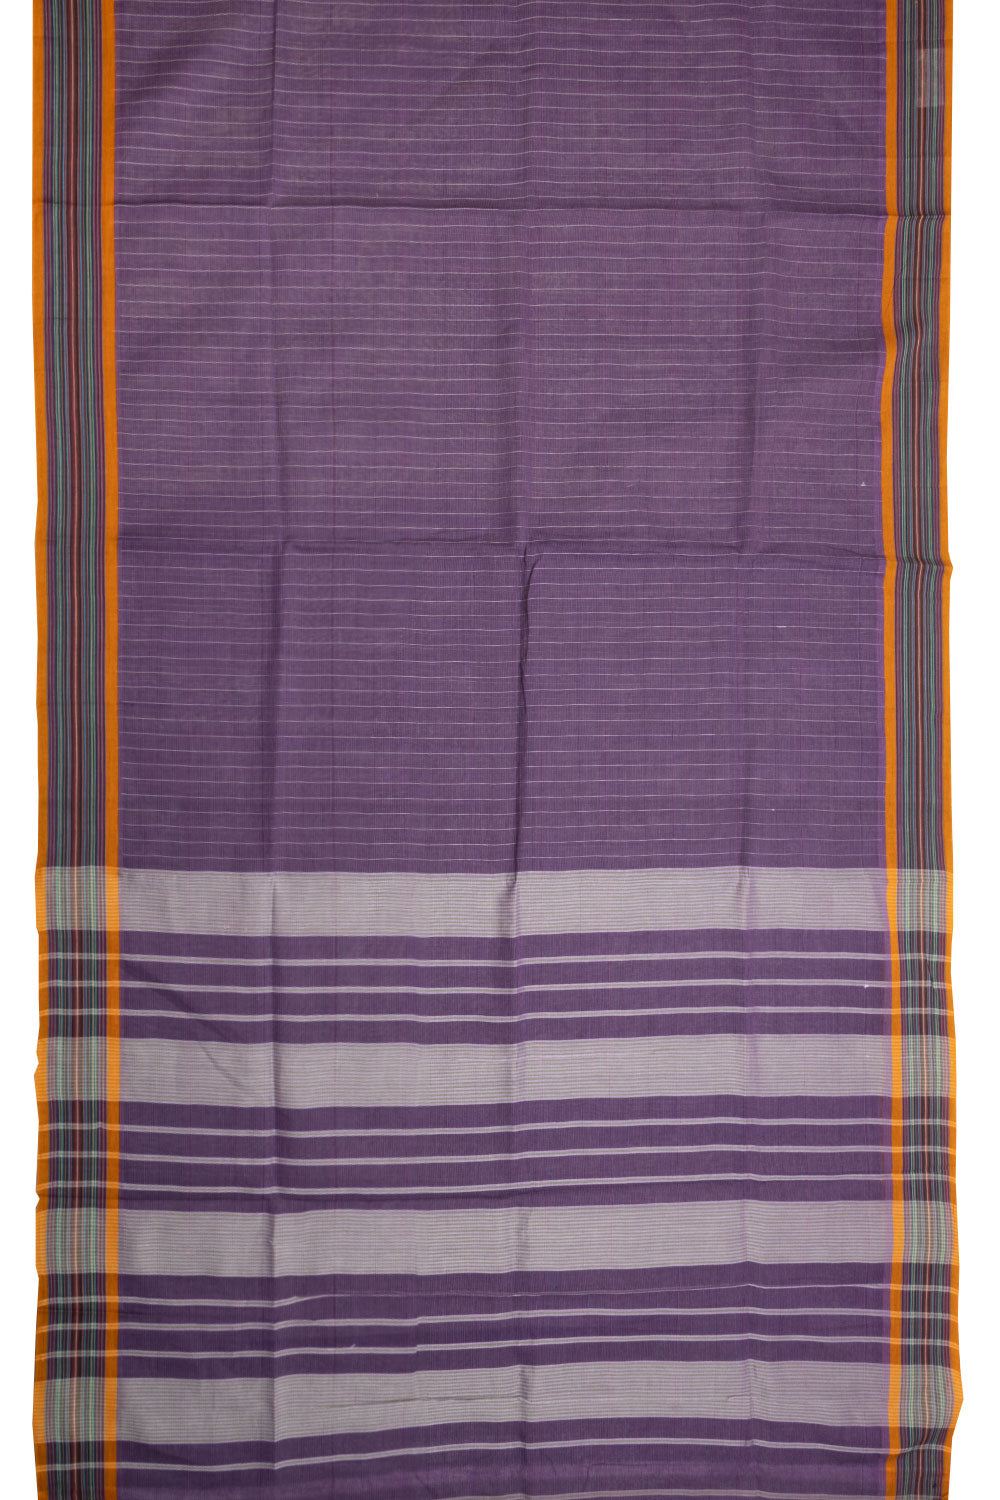 Purple Handloom Narayanpet Cotton Saree Without Blouse 10064365 - Avishya